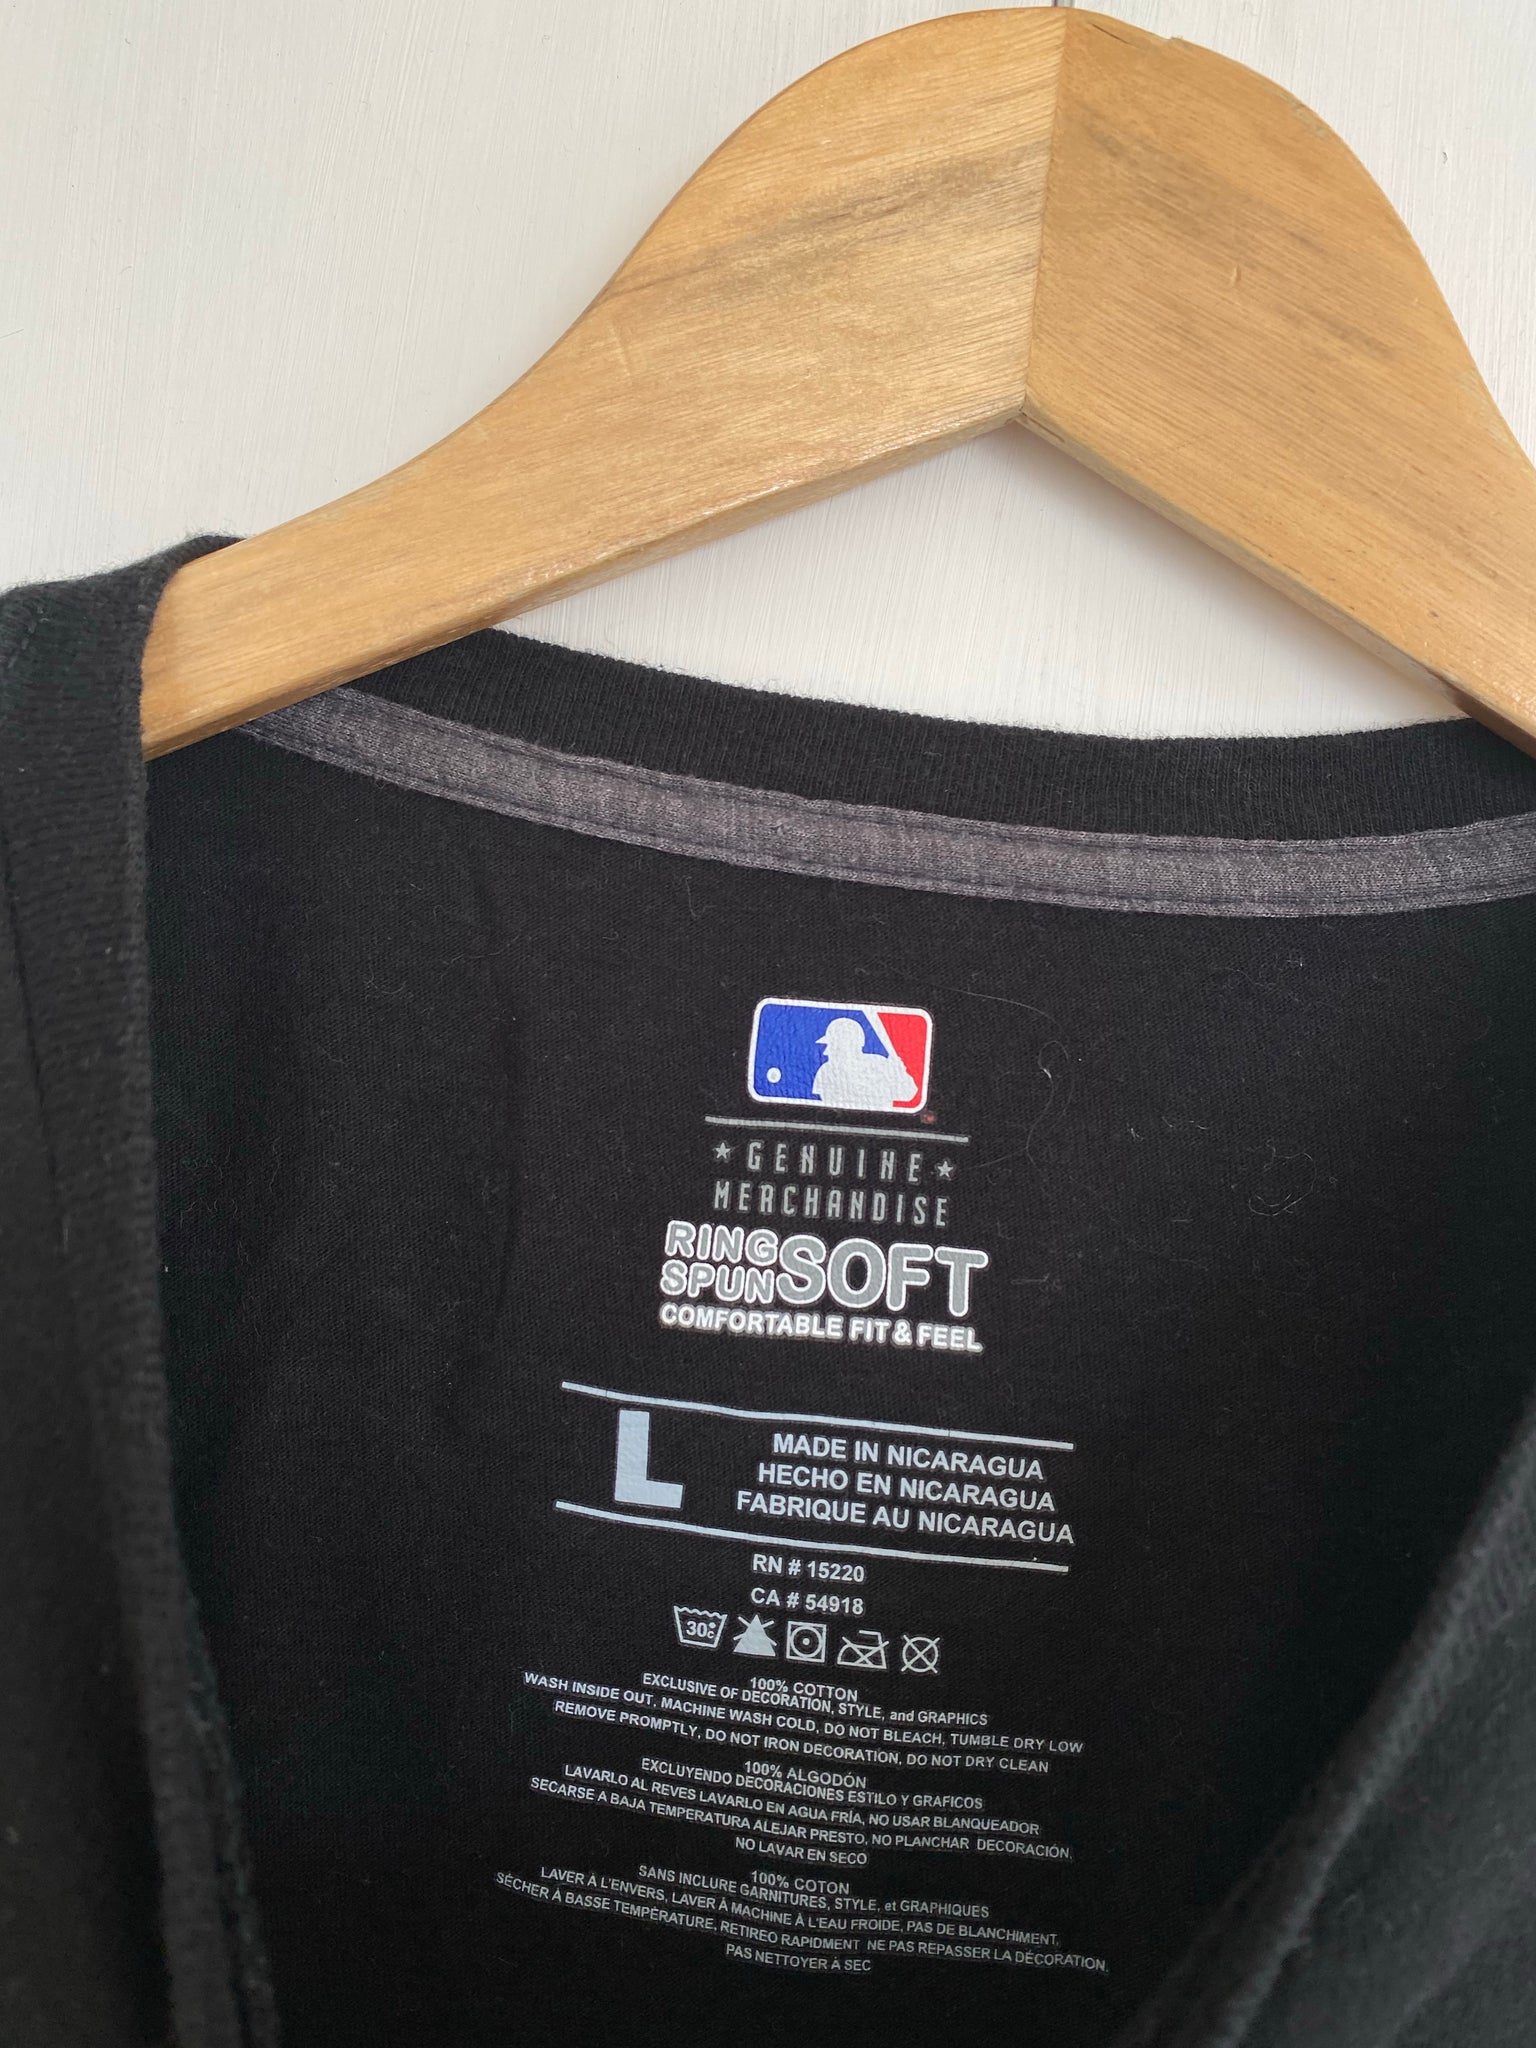 San Francisco Giants Oracle Park Major League Baseball Logo T Shirt -  Limotees